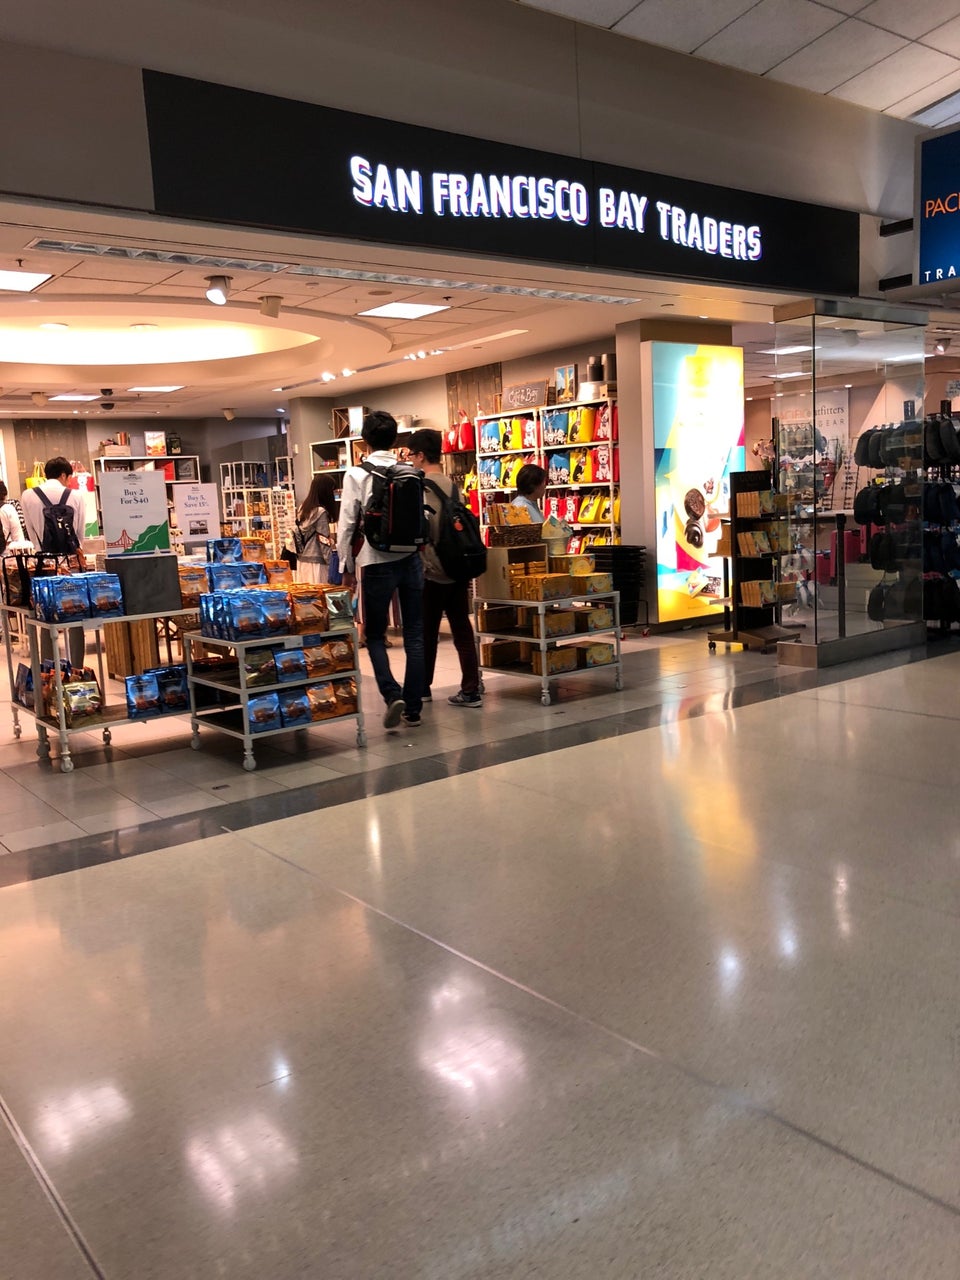 San Francisco Bay Traders